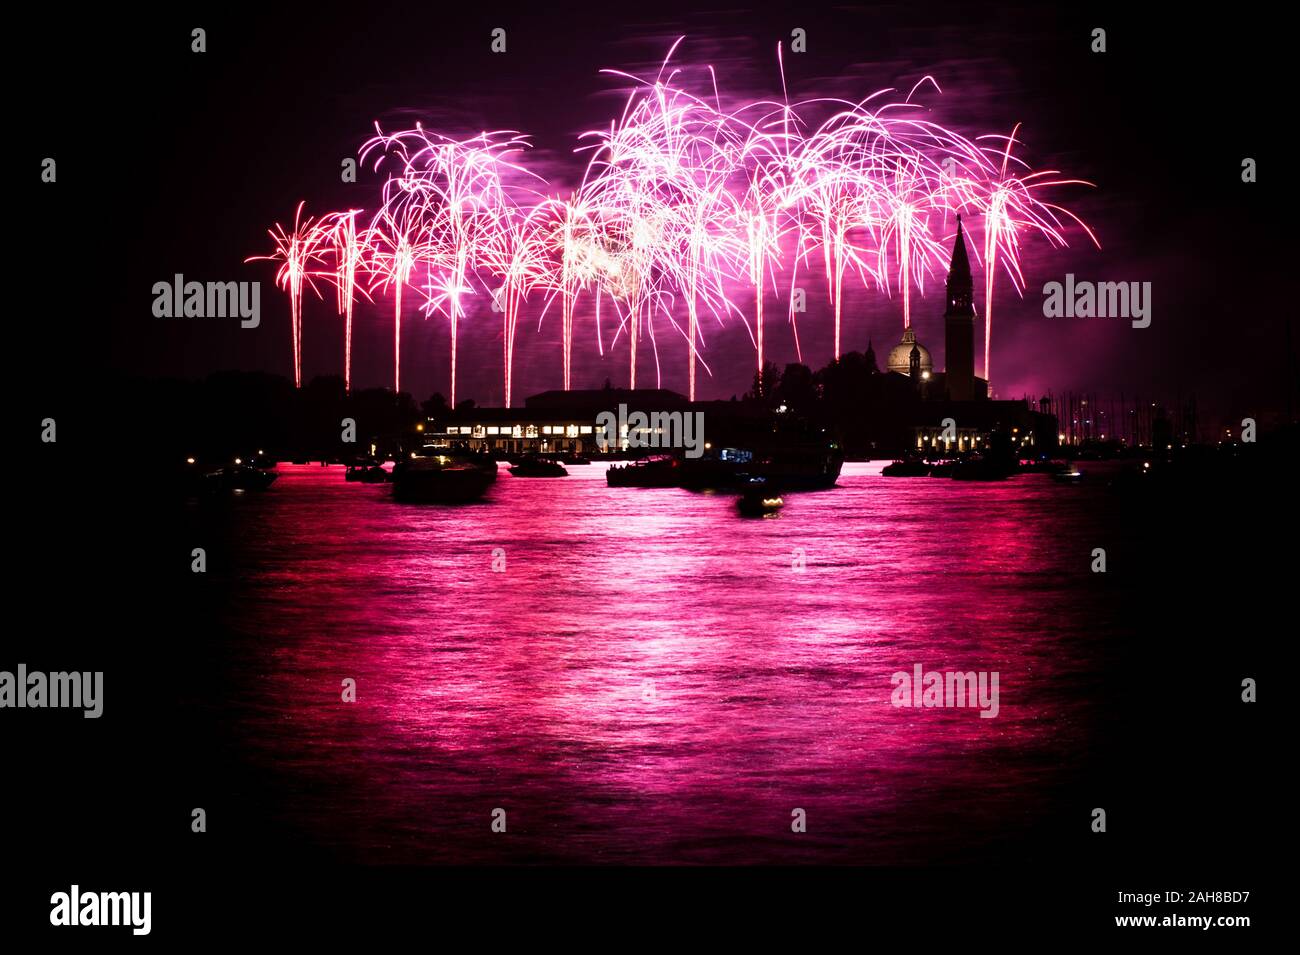 Photo nocturne emblématique de Venise, dont la silhouette est éclairée par des feux d'artifice roses Banque D'Images